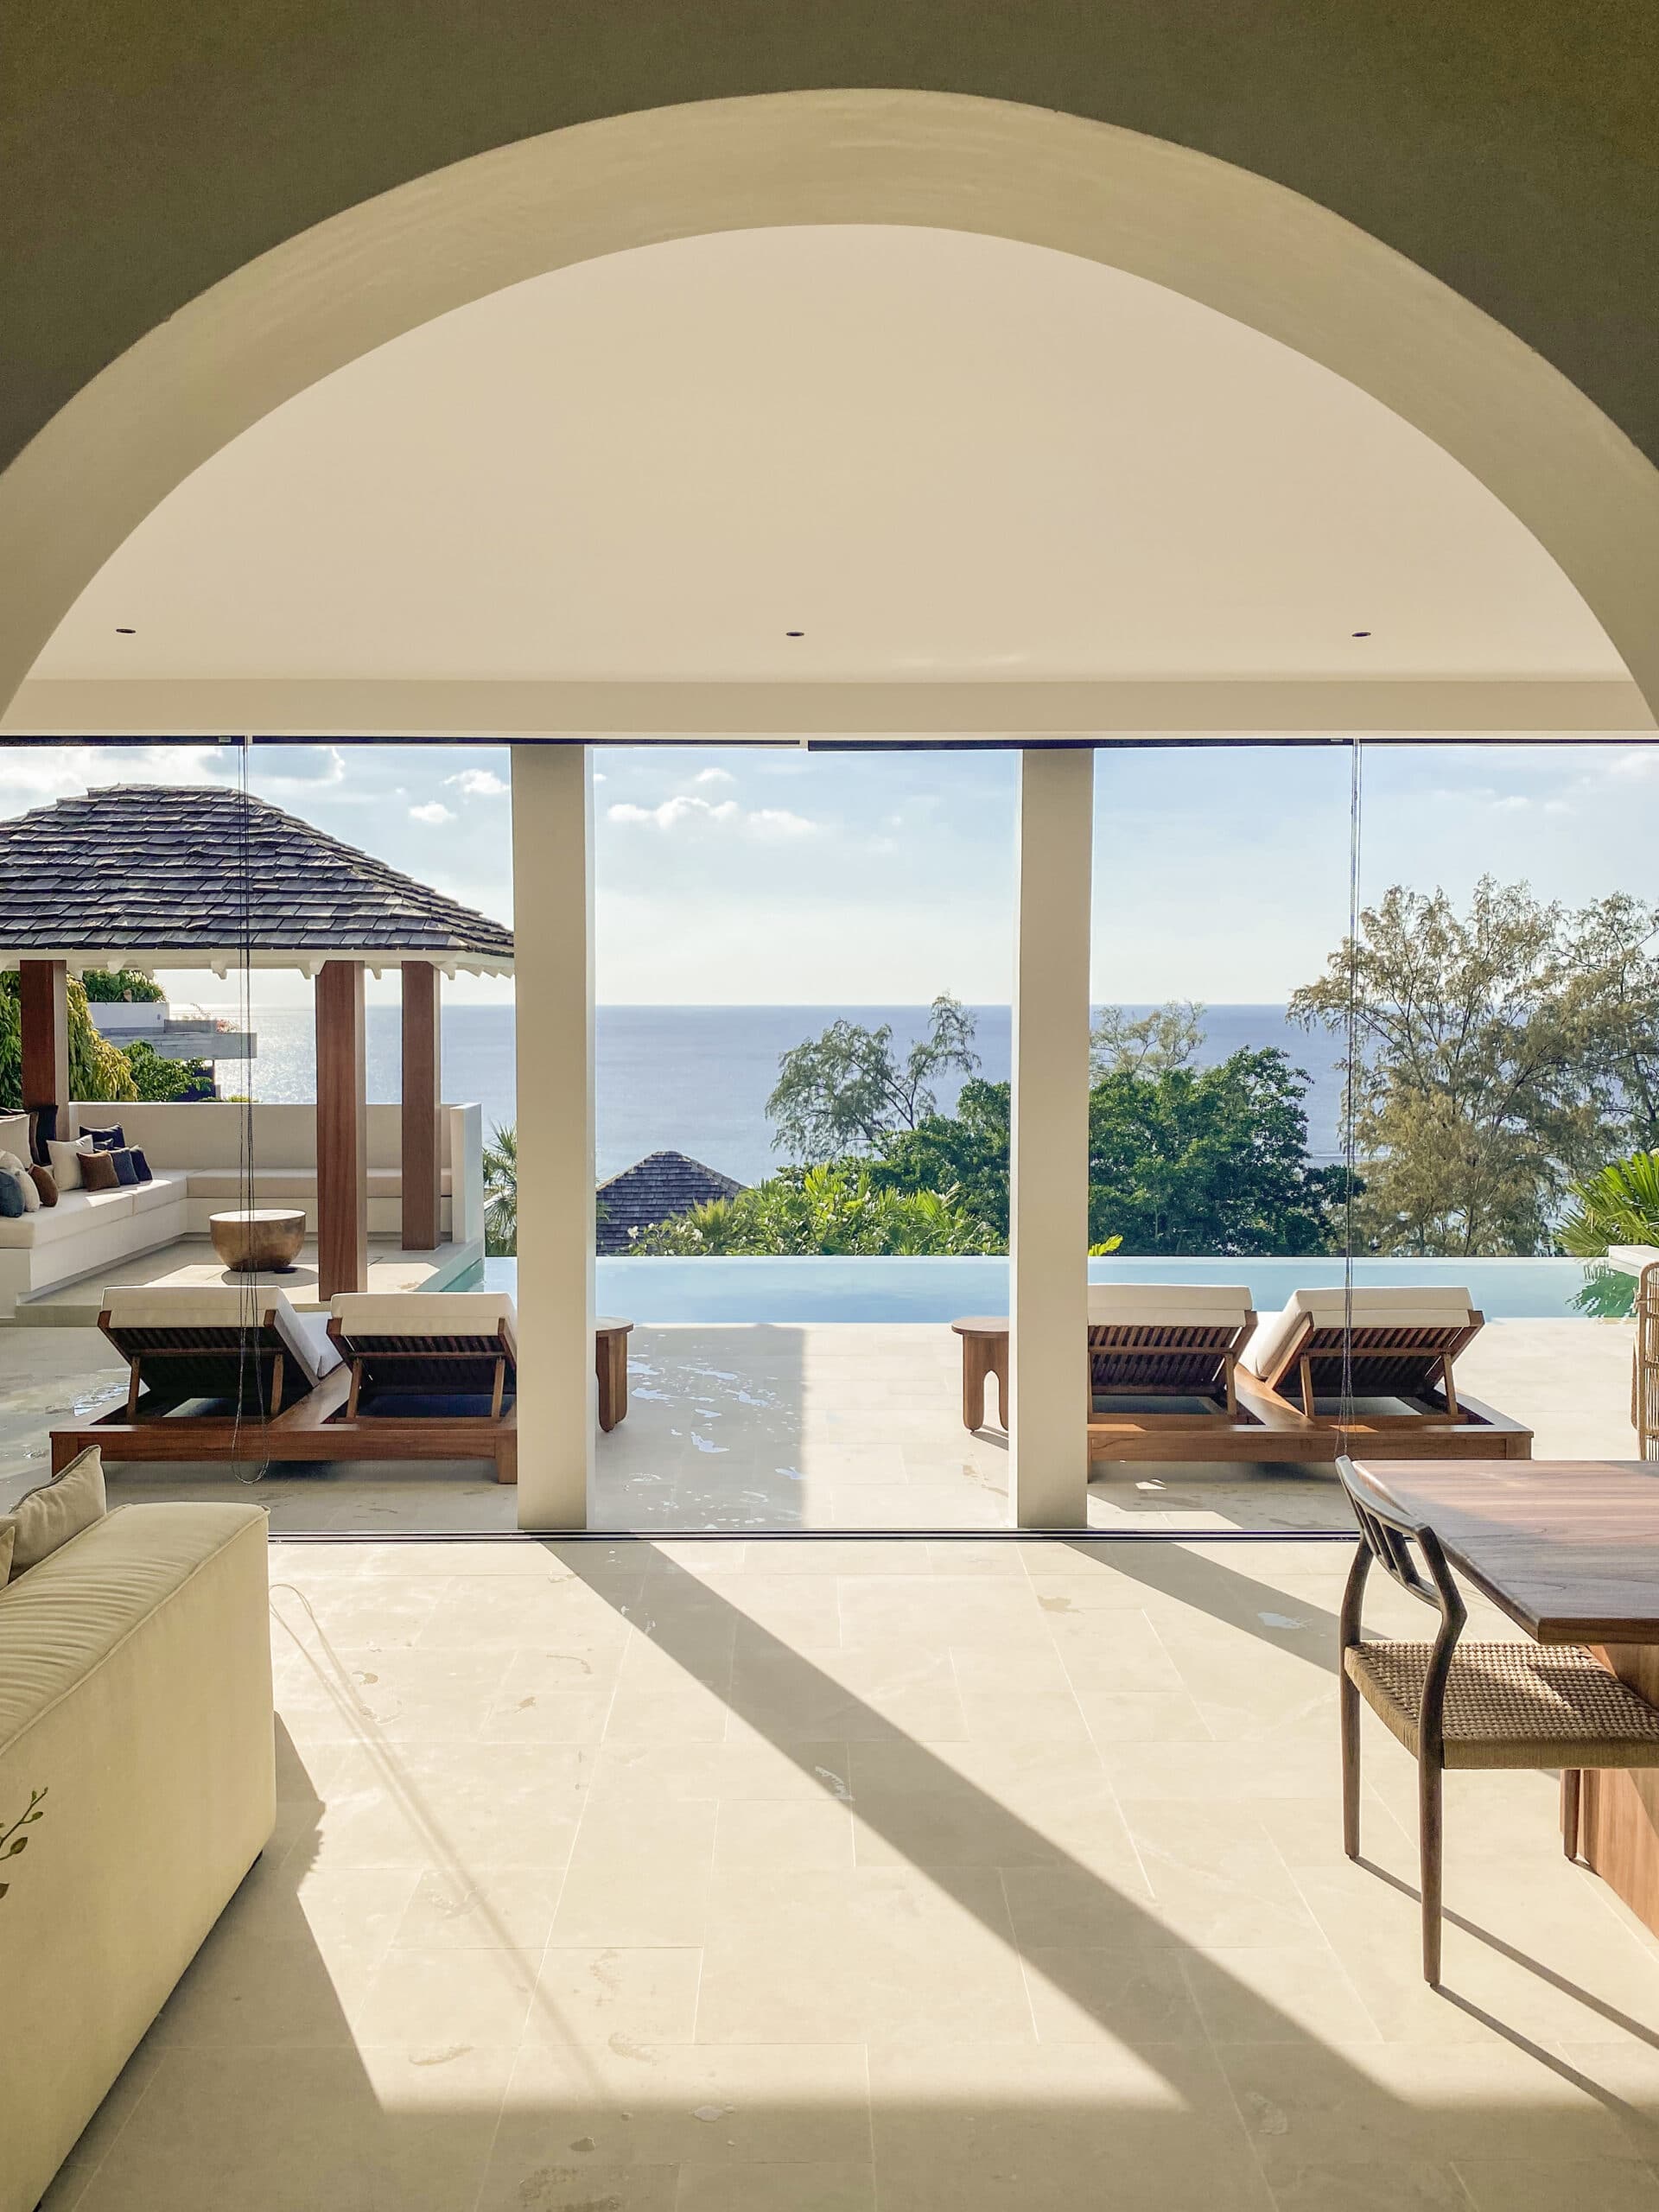 Design Assembly - Surin Villa Phuket - Bali Architect - Interior Design - Villa - Swimming Pool Area